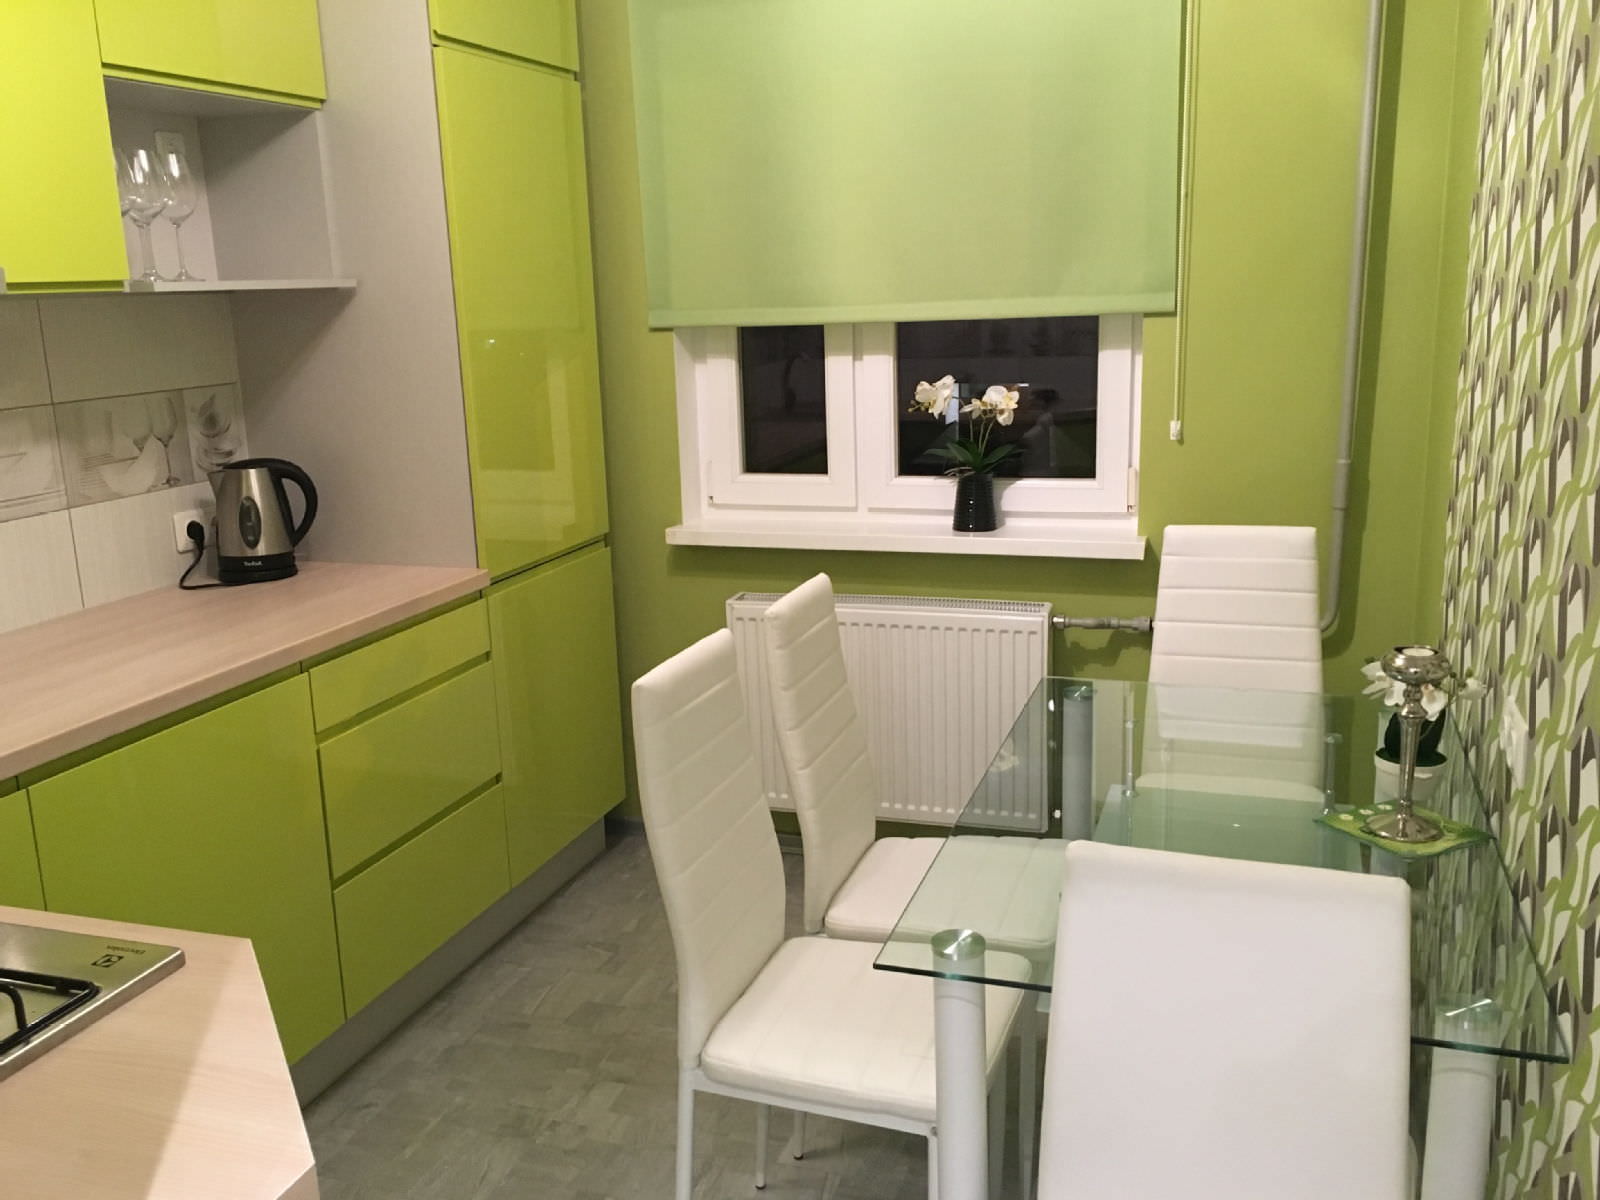 Кухня 6 кв метров в хрущевке — 2021: дизайн интерьера, с холодильником, газовой колонкой, особенности планировки, полезные советы